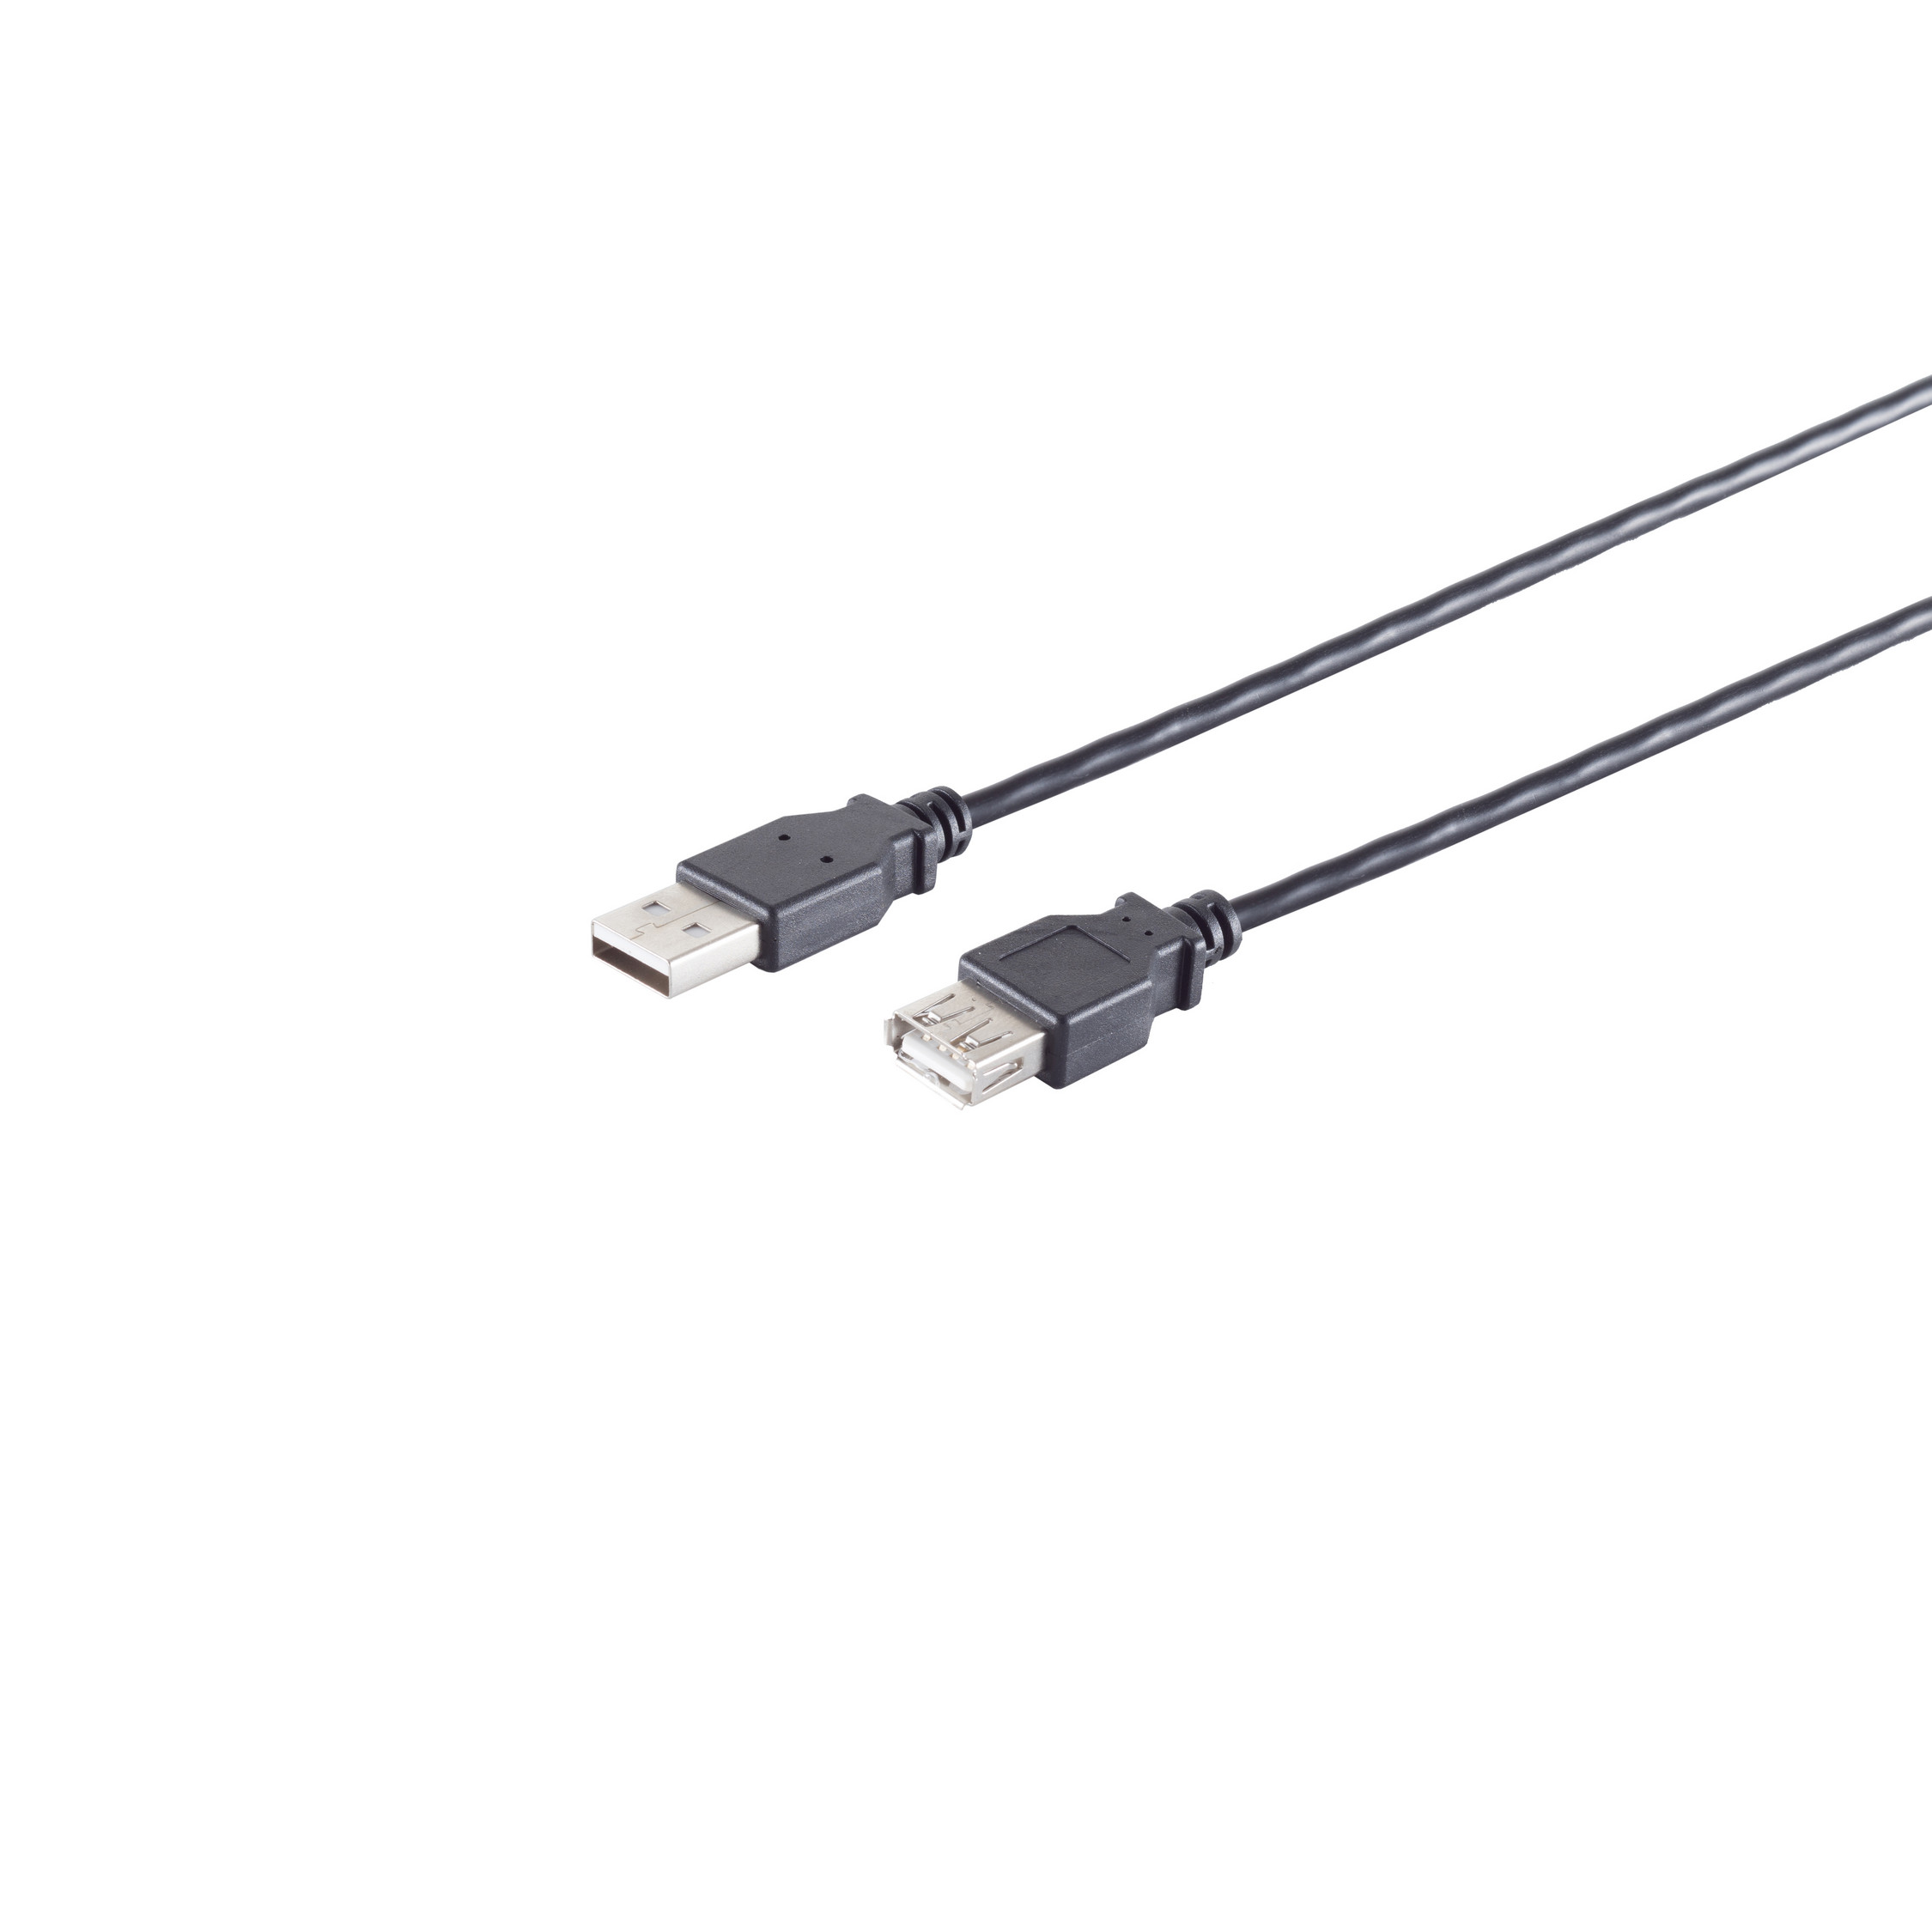 S/CONN MAXIMUM CONNECTIVITY USB High Buchse, Speed 2.0 USB Verlängerung, 3m Kabel A/A schwarz, USB 2.0